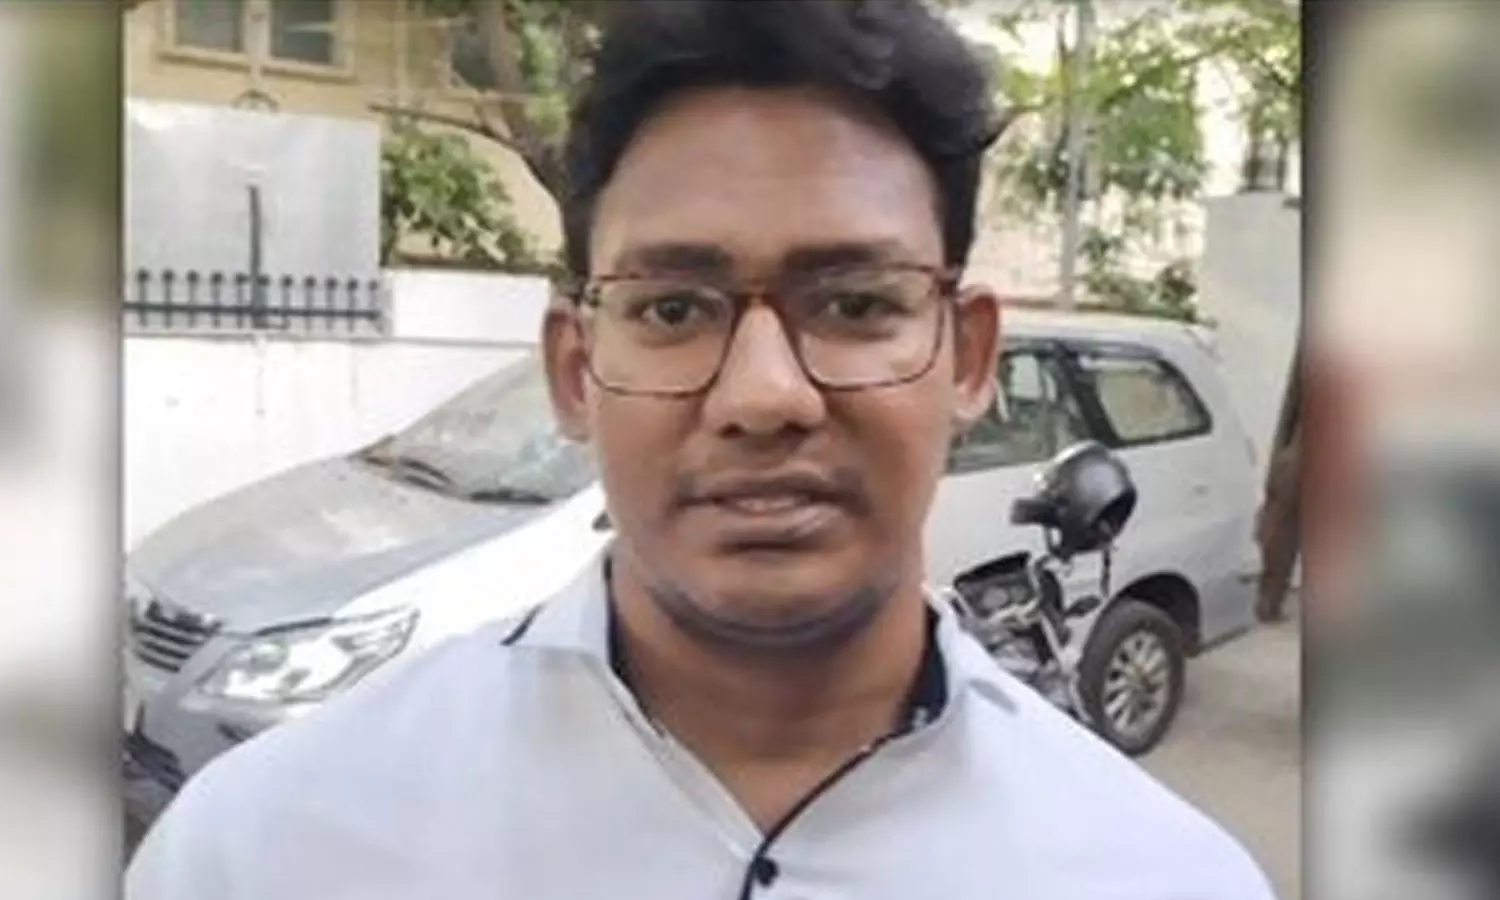 படுக்கை அறையில் பேனா கேமராவை பொருத்தி பெண்ணை ஆபாசமாக வீடியோ எடுத்த மருத்துவ  மாணவர் | Tamil News Medical Student Arrested for Porn video case